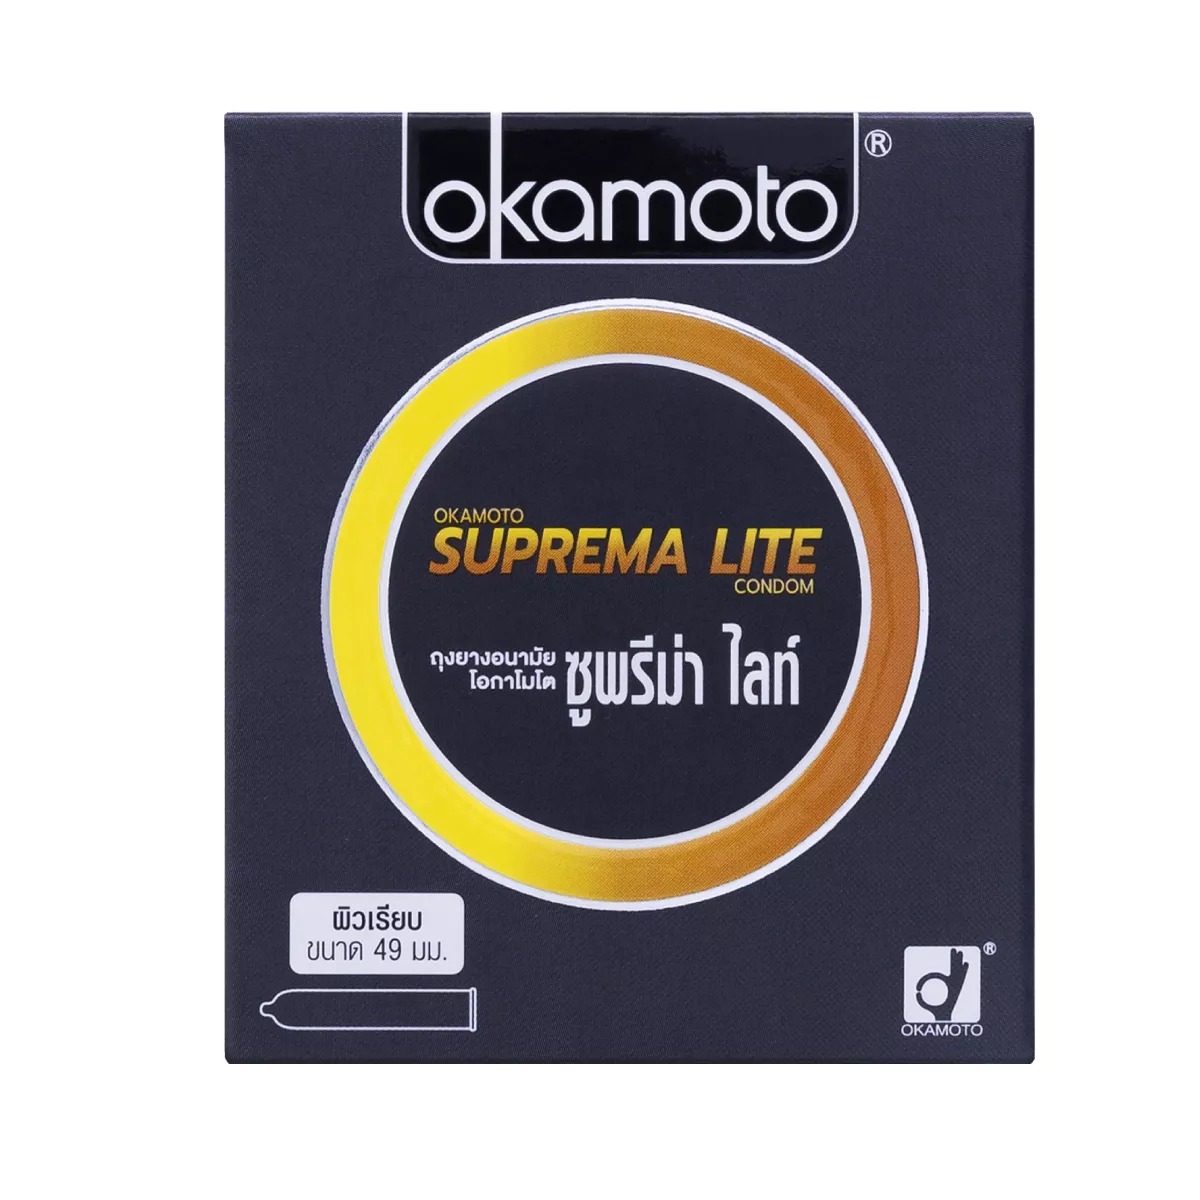 ถุงยางอนามัย Okamoto Suprema Lite (ไซต์ 49 ขนาดเอเขีย)